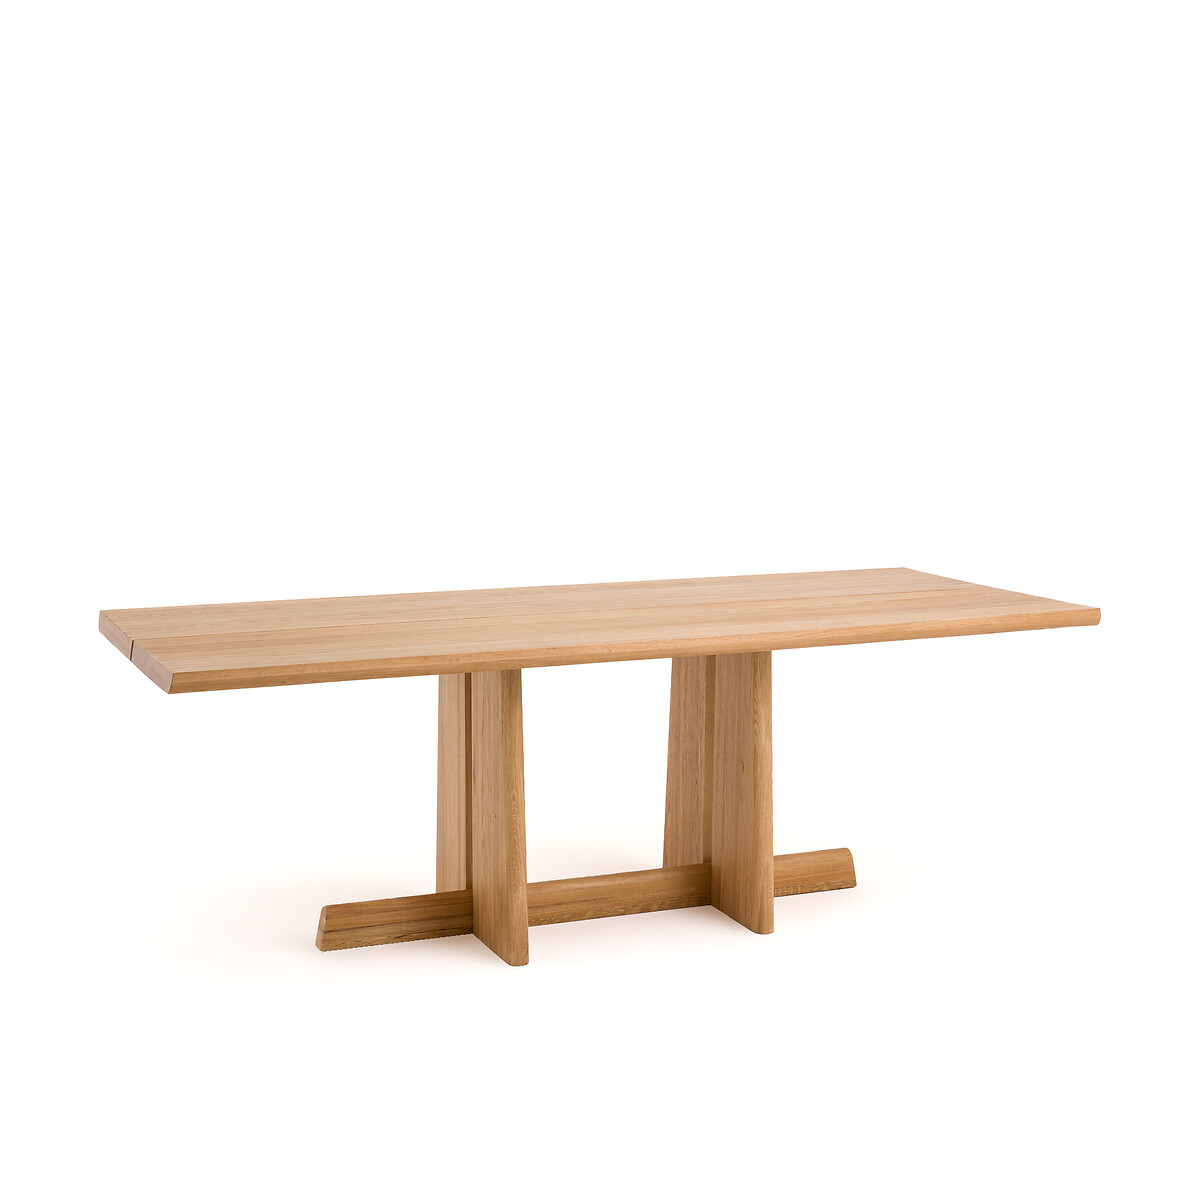 Boecy Sandblasted Solid Oak Dining Table